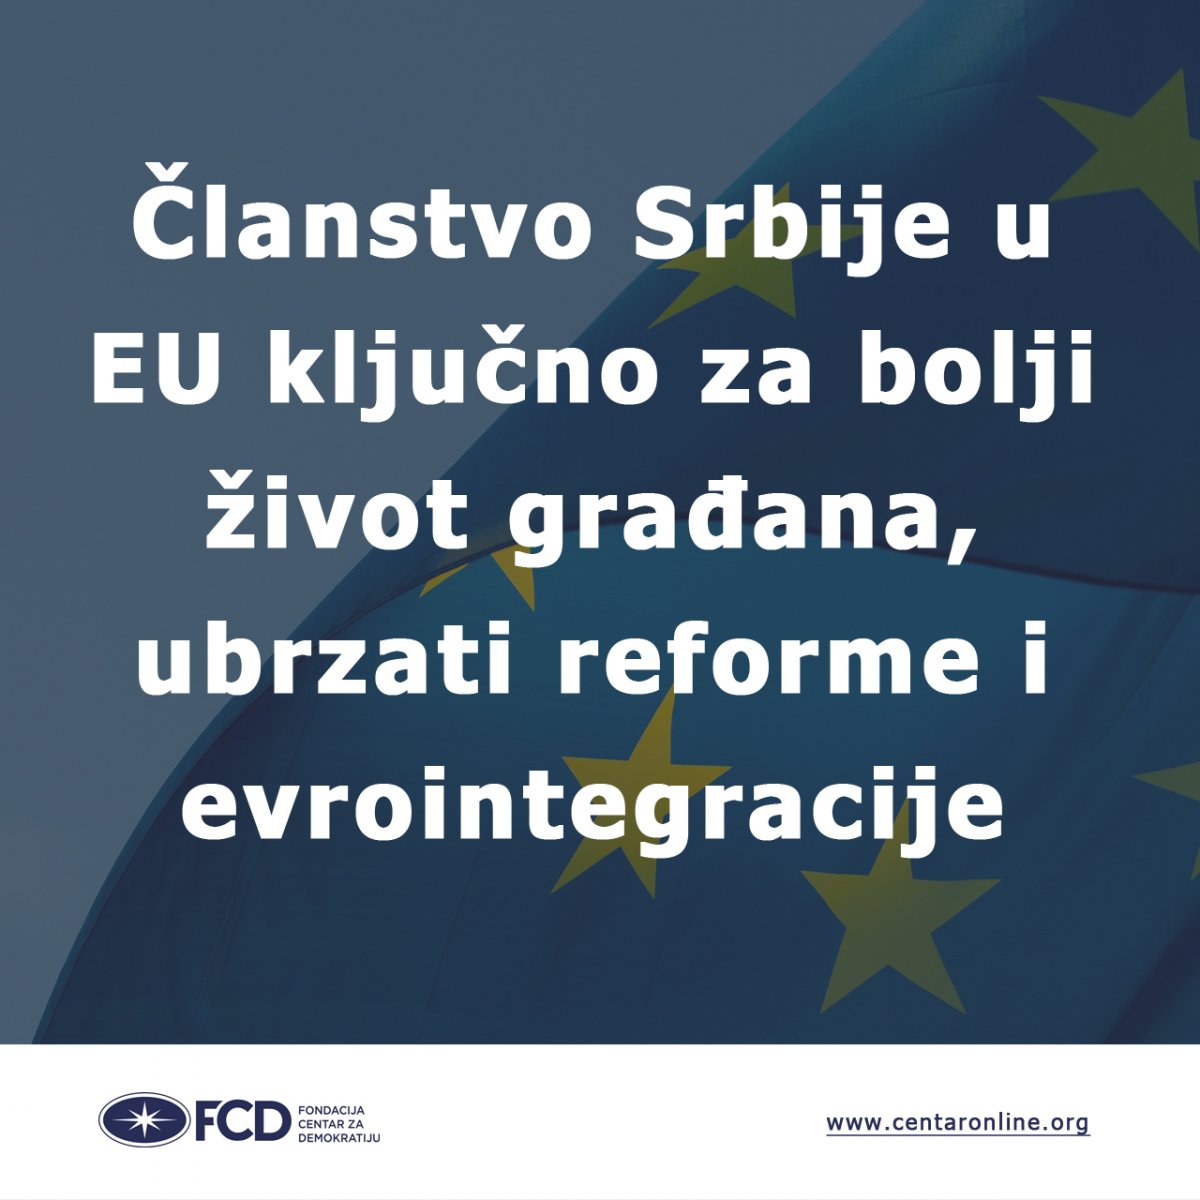 Članstvo Srbije u EU ključno za bolji život građana, ubrzati reforme i evrointegracije